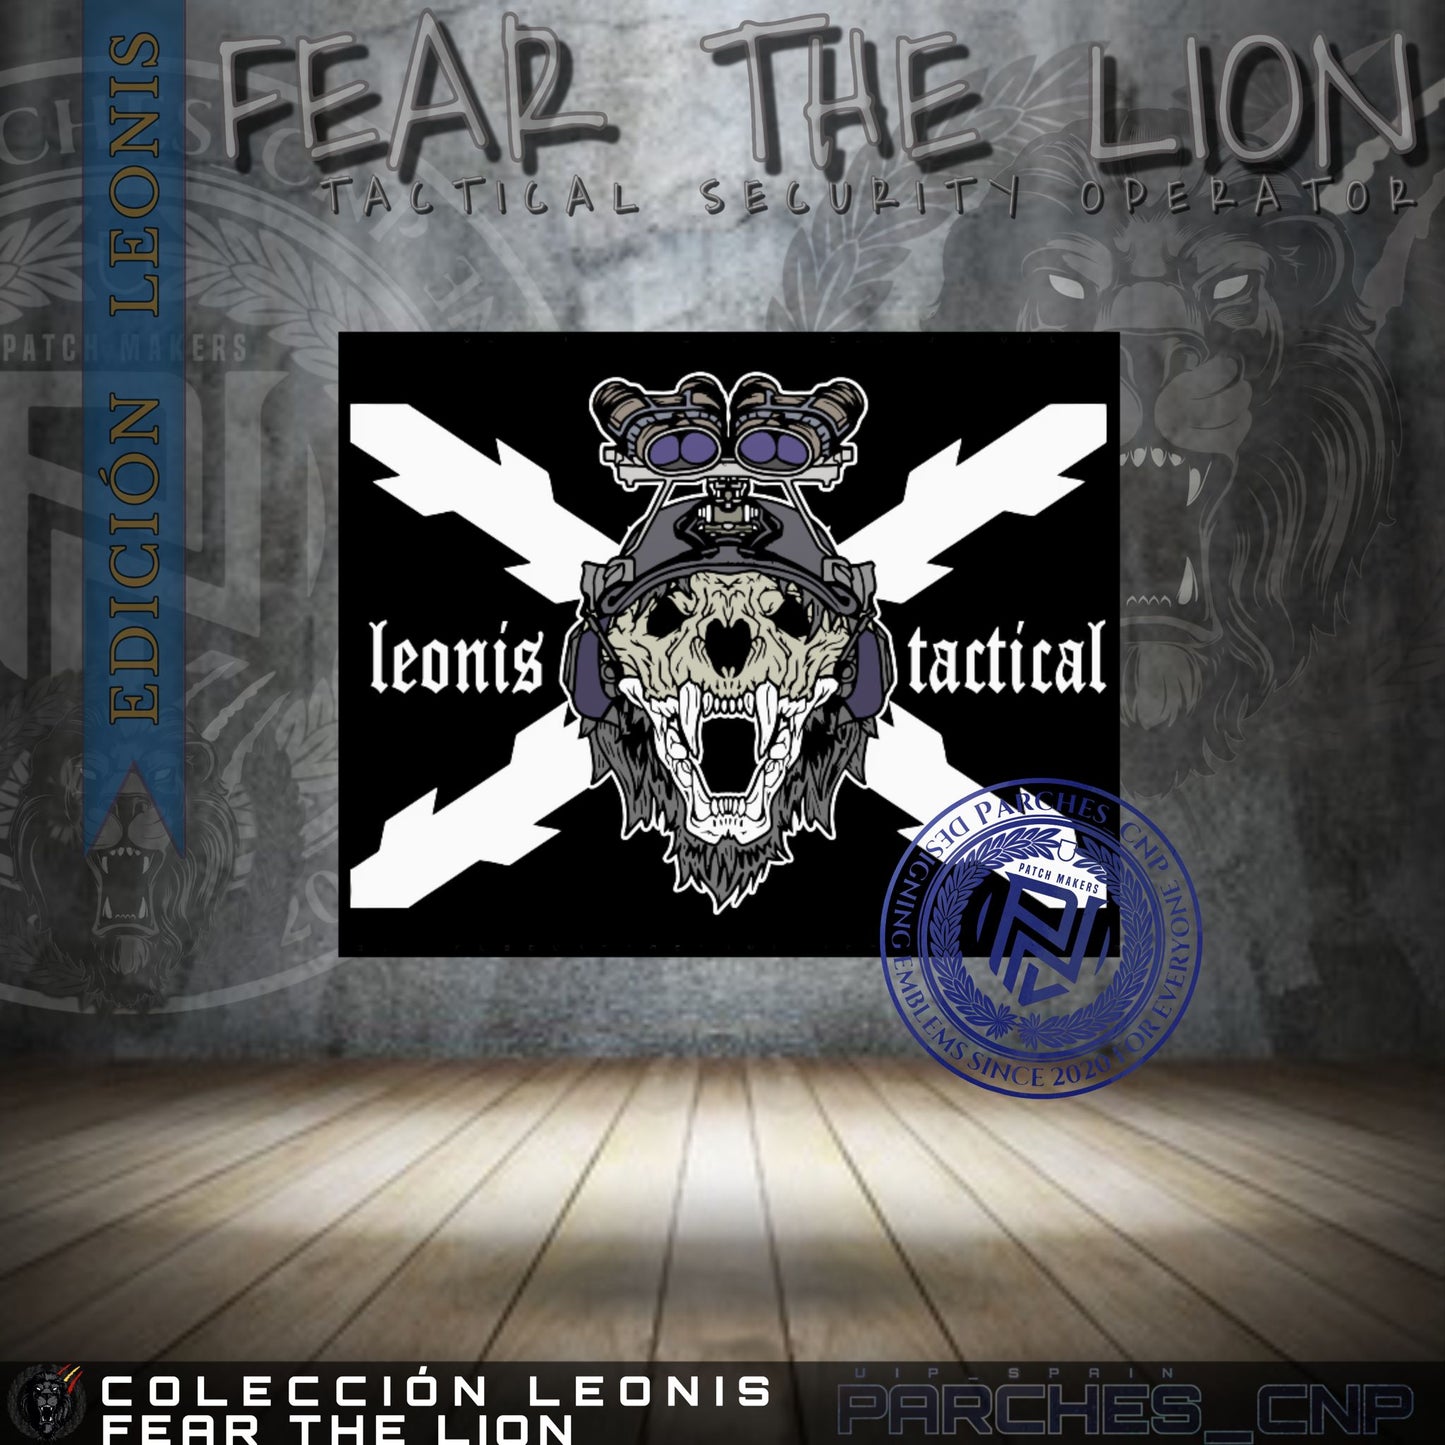 Parche Fear The Lion